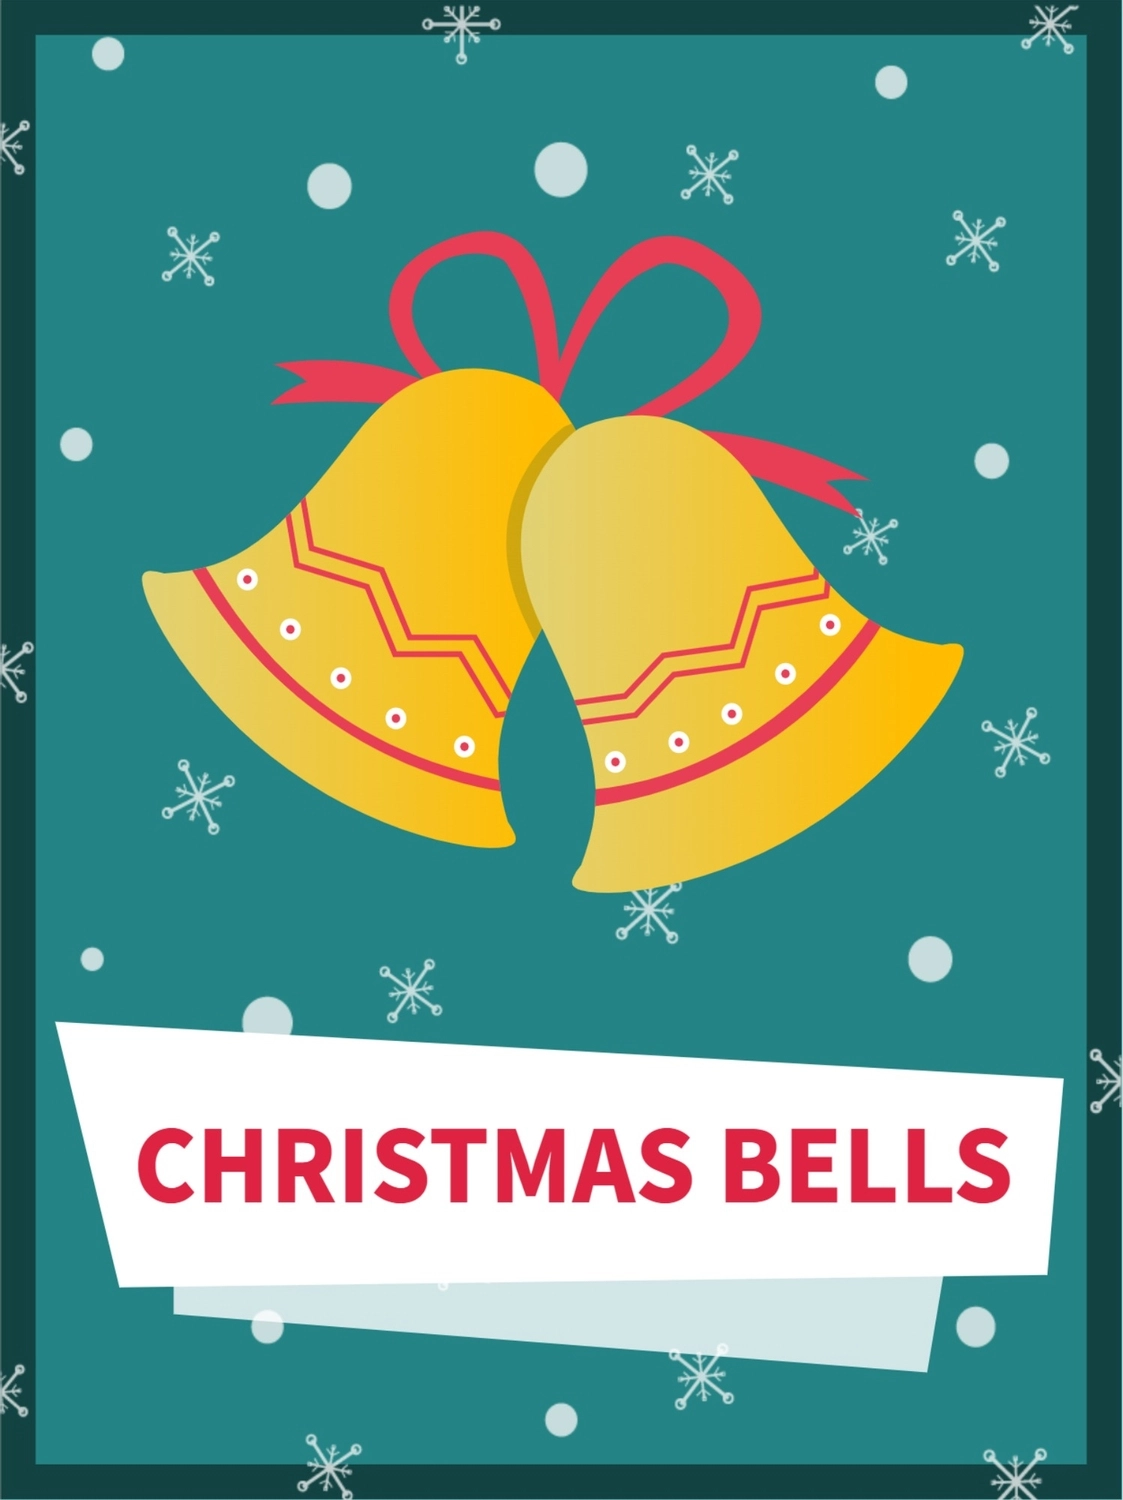 クリスマスベル, 矩形, クリスマスカード, 作成, グリーティングカードテンプレート